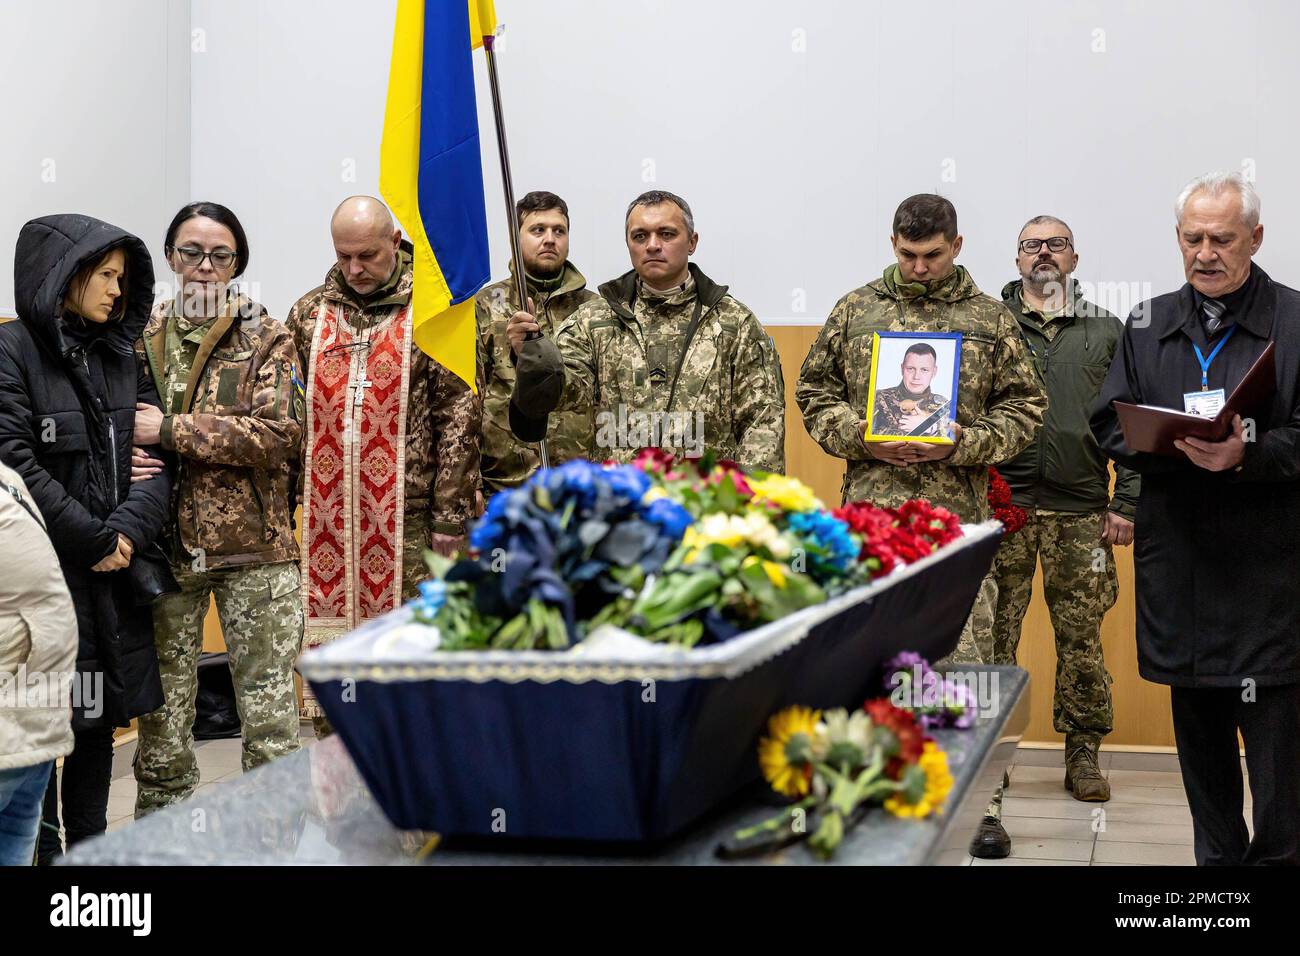 Amici e familiari partecipano al funerale di Evgeny Yakovlev, 42 anni, un soldato ucciso dalle forze russe sul fronte orientale ucraino in un combattimento, al cimitero di Lisove. Il cimitero di Lisove è il luogo in cui sono sepolti la maggior parte degli uomini dell'esercito caduti di Kiev. Poiché l'invasione su larga scala dell'Ucraina da parte delle forze russe continua, la lotta nell'est dell'Ucraina causa un tasso di incidenti molto elevato, anche se i numeri esatti sono sconosciuti. L'Ucraina si prepara ad un'offensiva primaverile per riprendere la terra occupata dalla Russia. Foto Stock